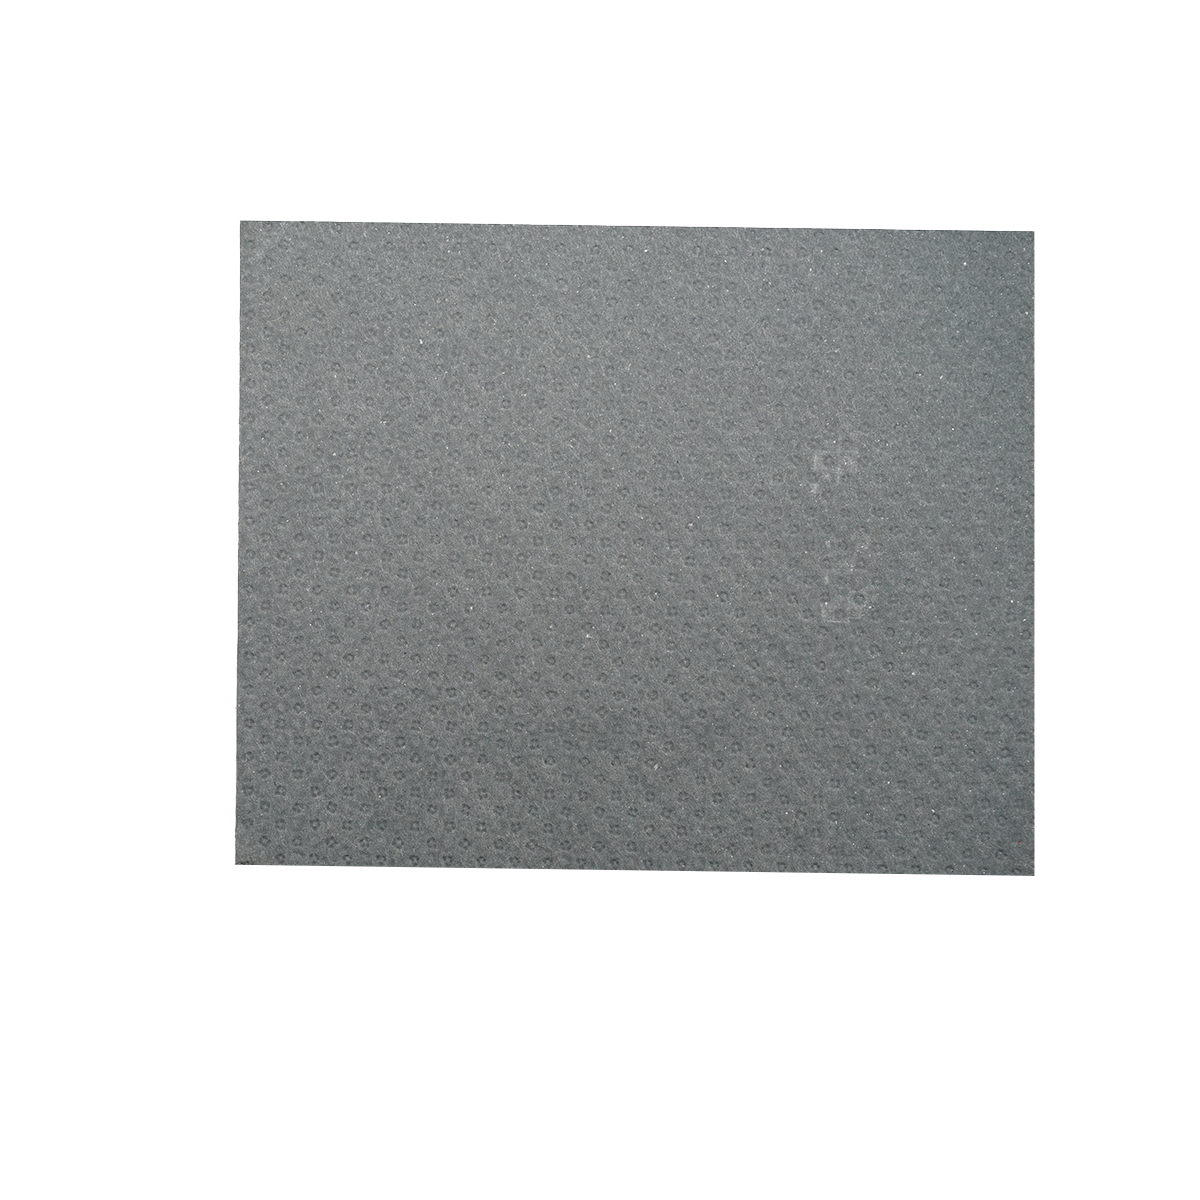 Coala clingherit cu insertie metalica l = 0,5M L = 1M grosime = 1,5 mm (culoare gri)